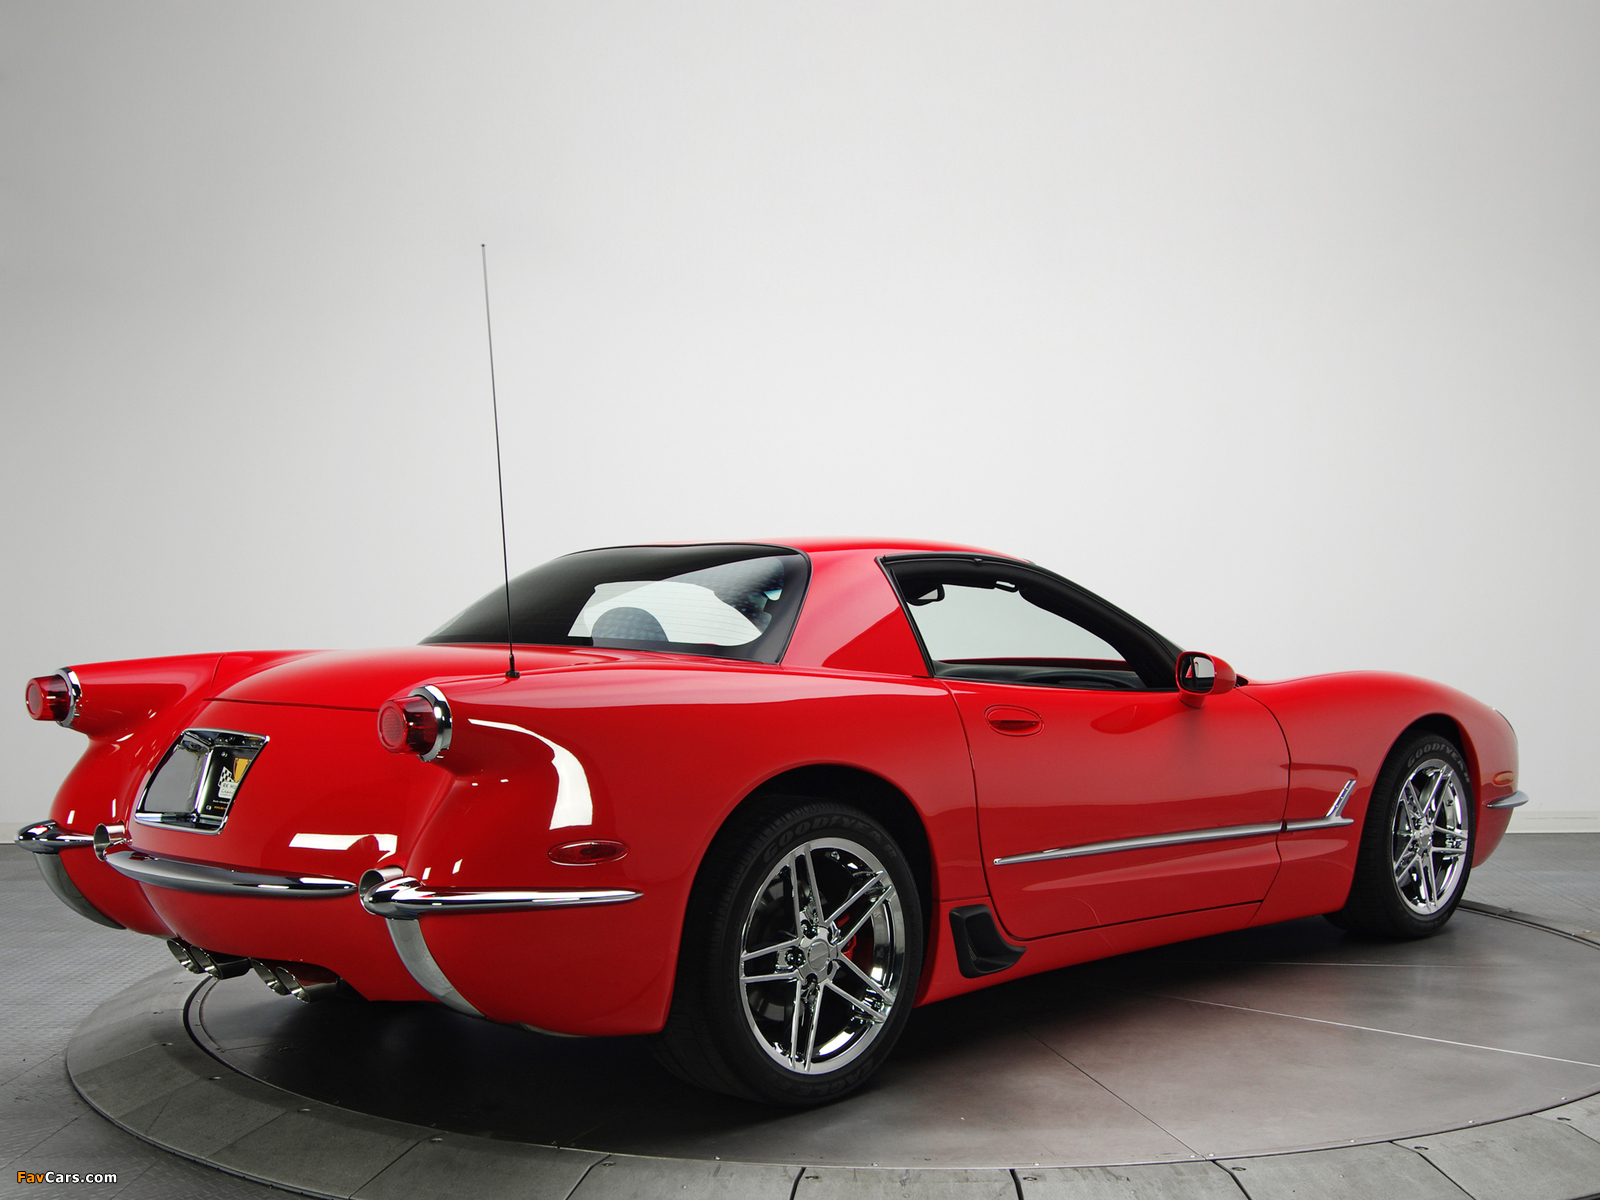 Corvette Z06 1953 Commemorative Edition (C5) 2001 pictures (1600 x 1200)